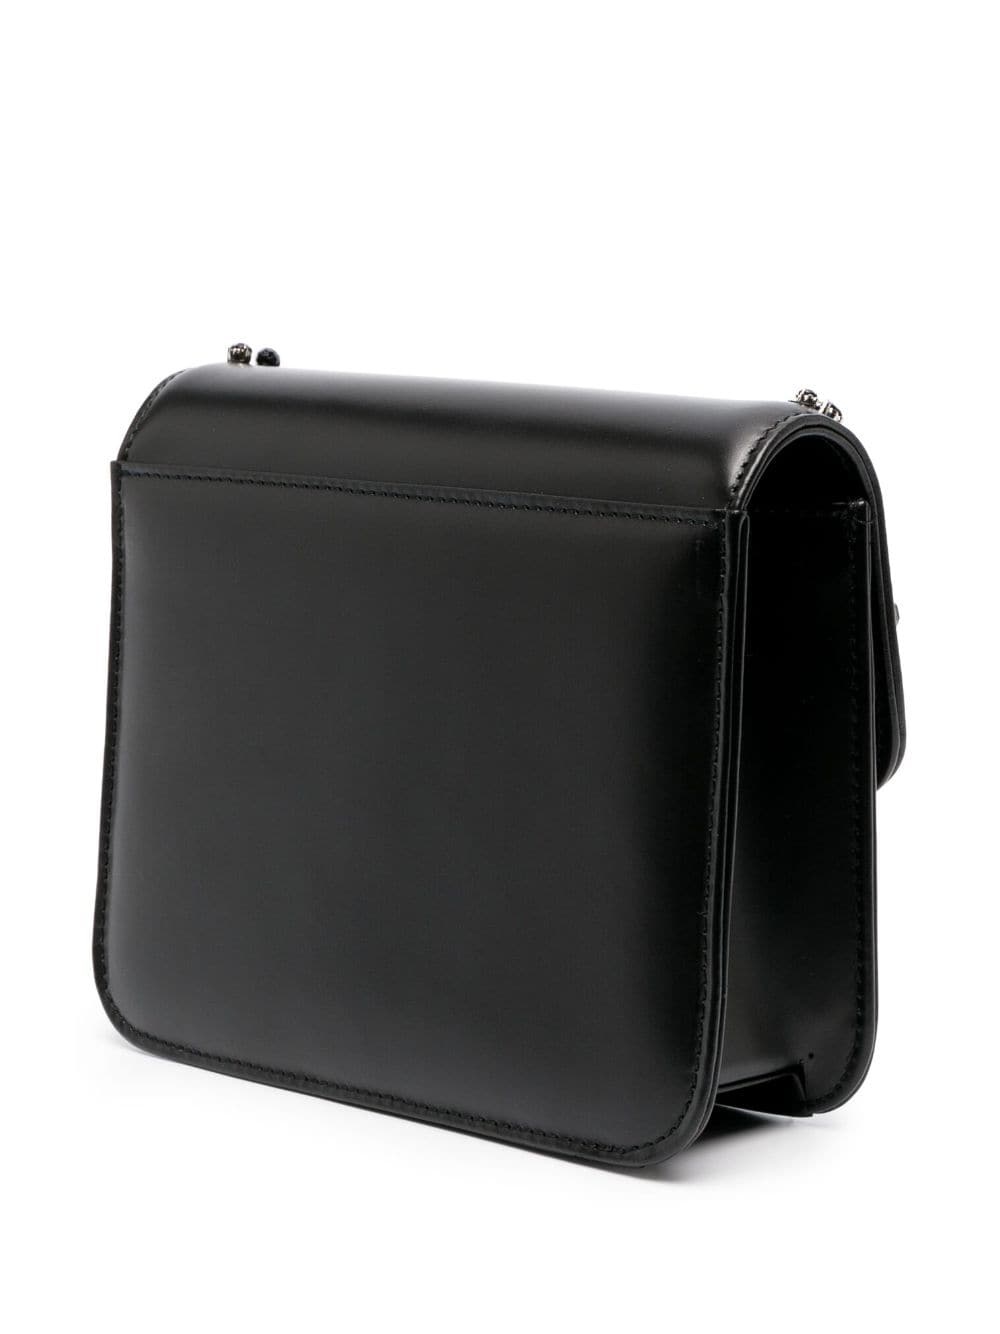 rhinestone-embellished leather crossbody bag - 4